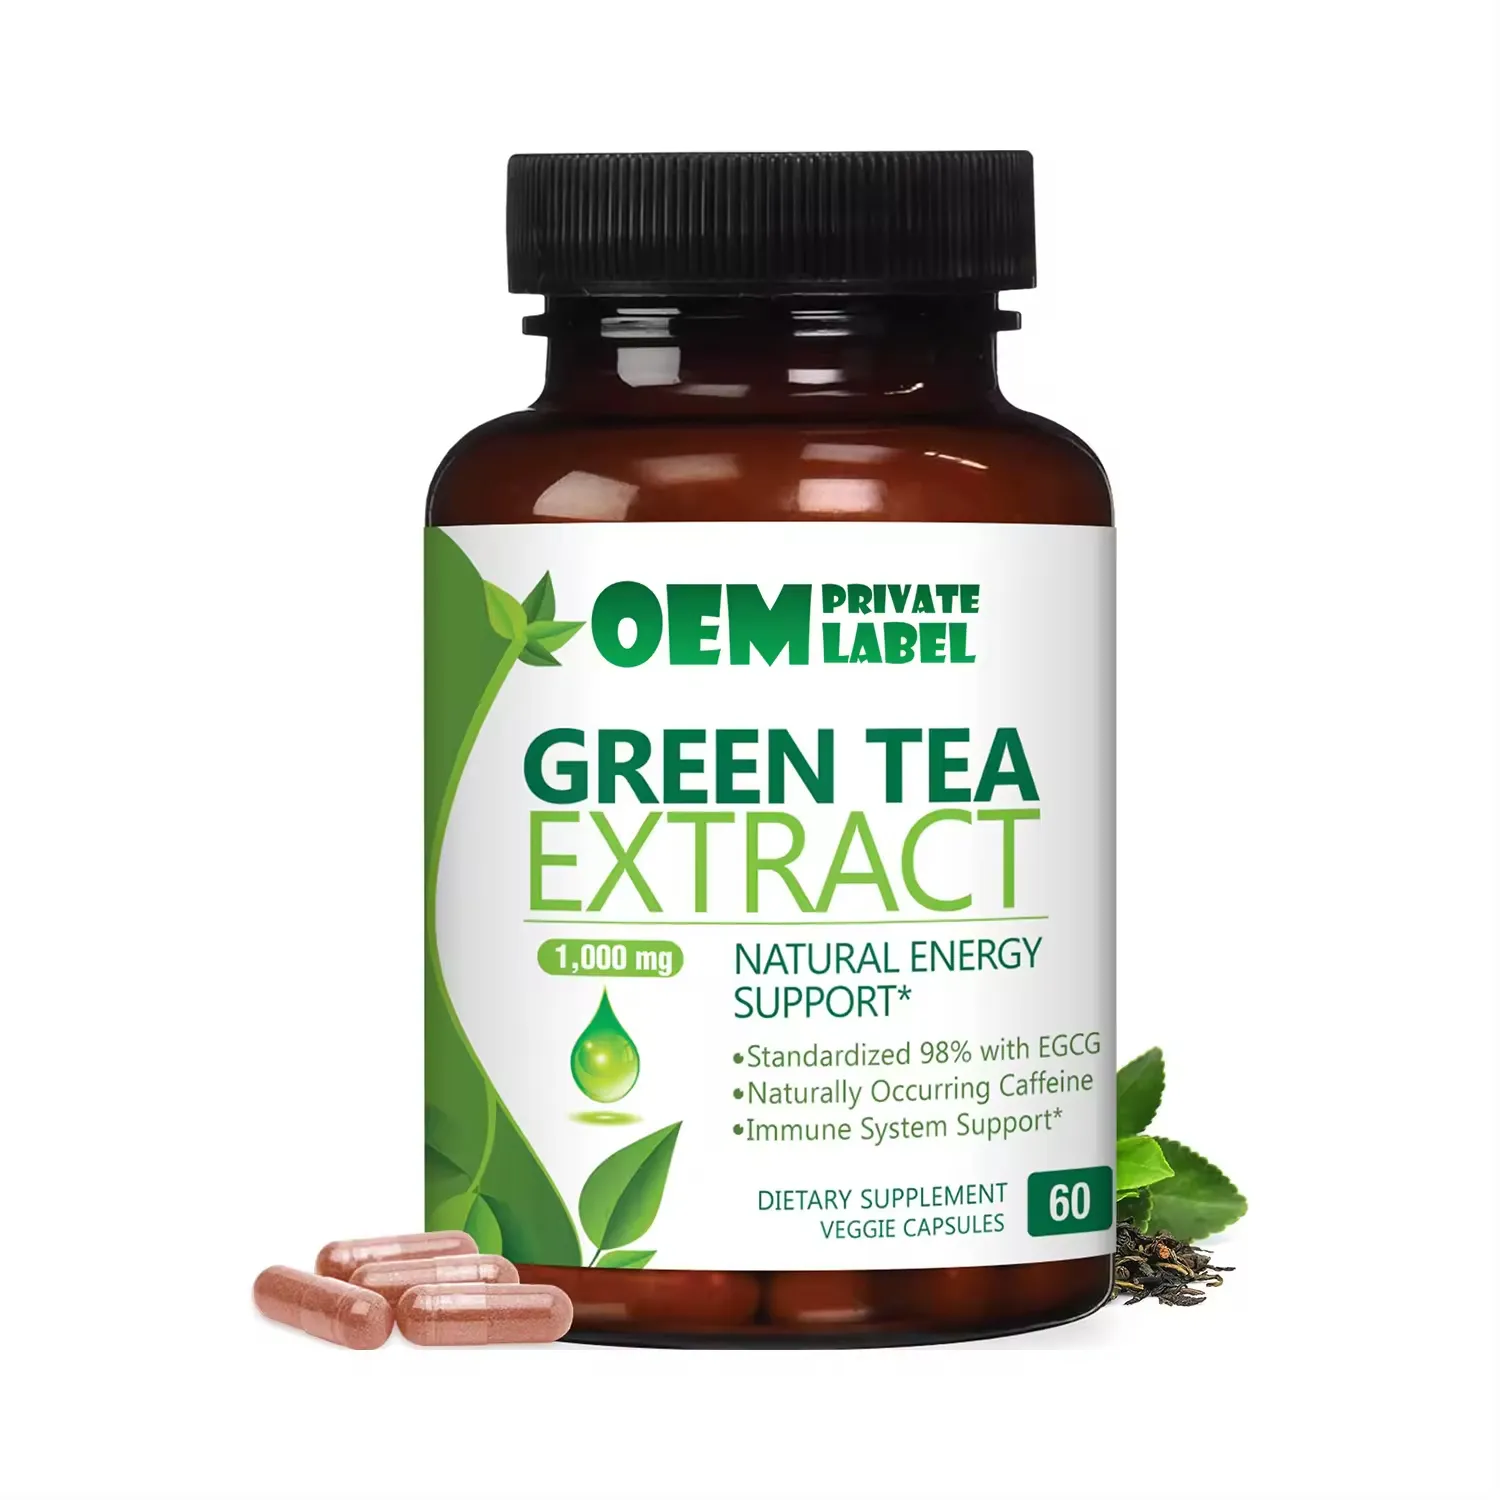 oem תוסף בריאות צמחים תווית פרטית תה ירוק קפסולות הרזיה תומכות לב ואנטי חמצון בריאות קפסולות תה ירוק